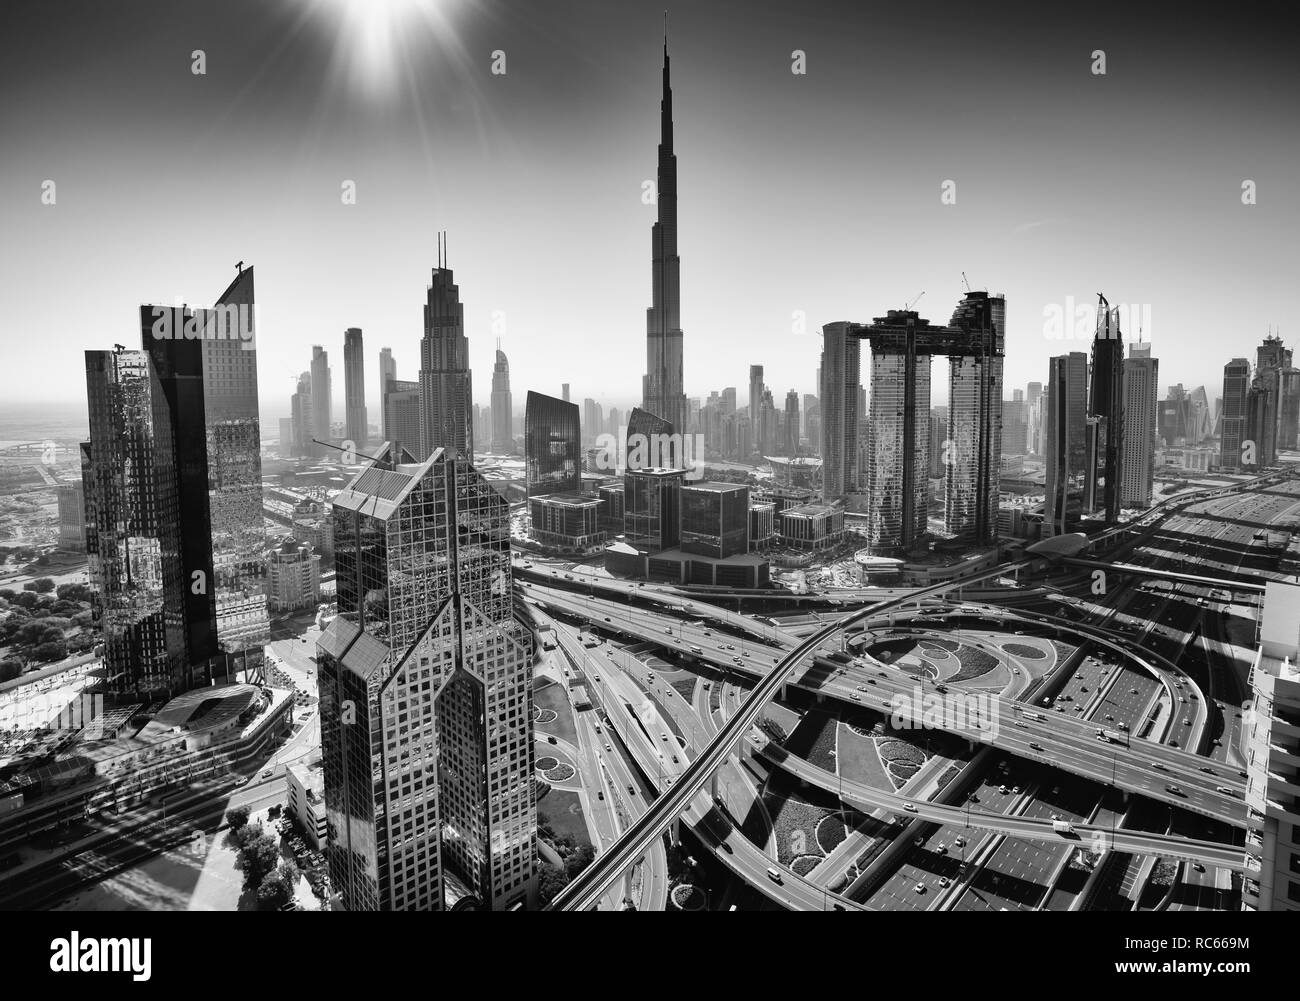 Vista dello skyline del centro di distretto in Dubai con il Burj Khalifa Tower prominente, Emirati Arabi Uniti Foto Stock